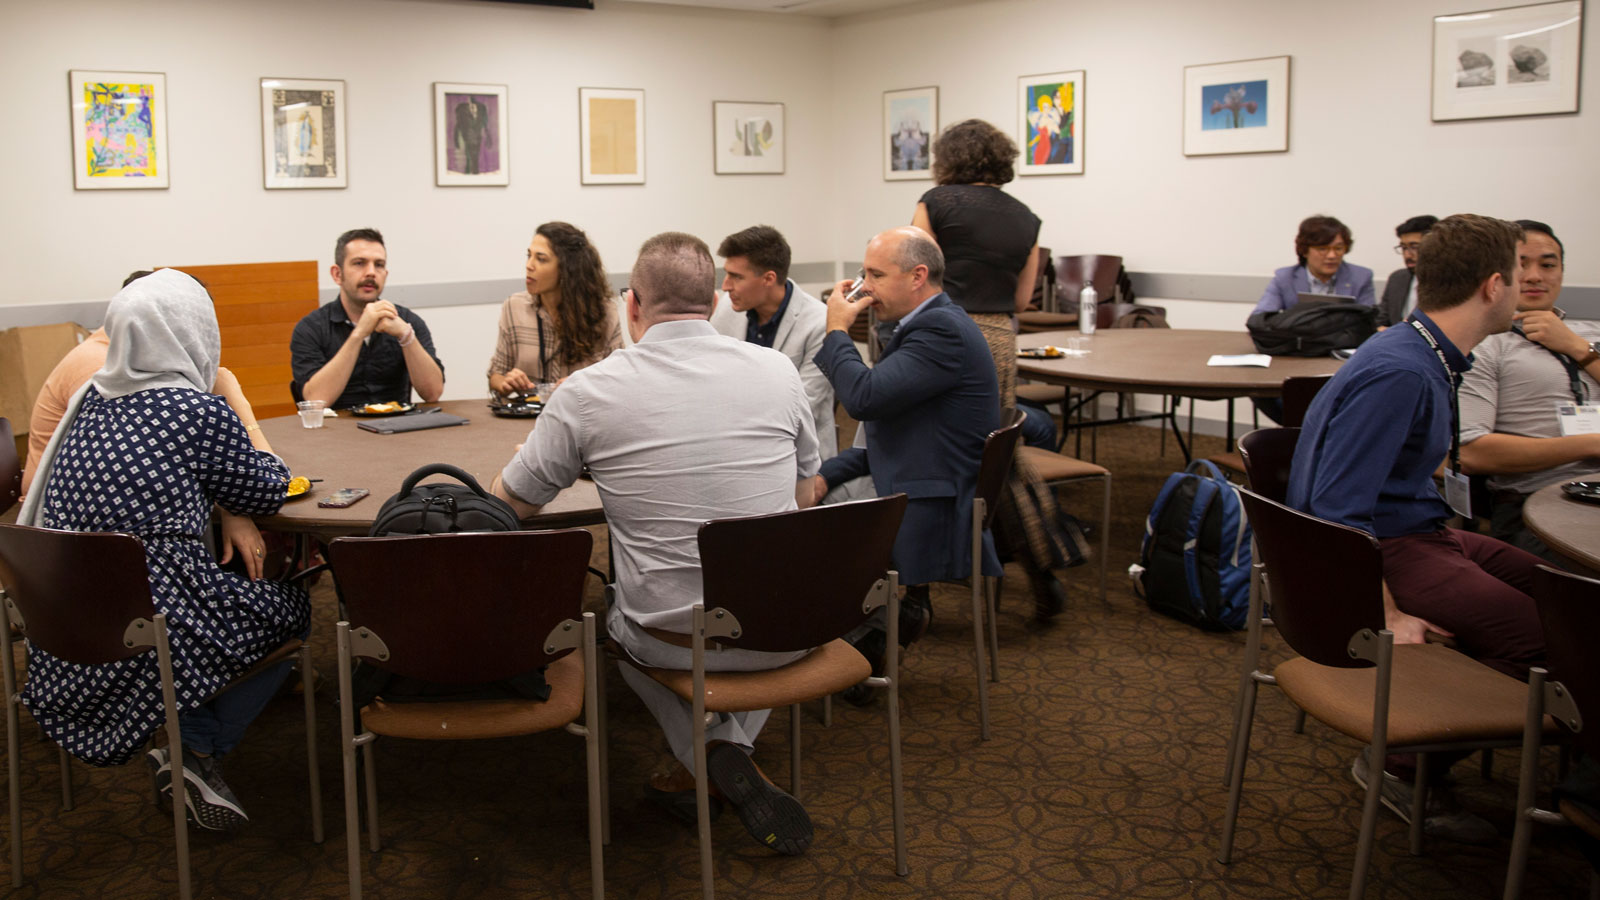 IEEE Brain 2019 Neurotech Entrepreneurs Workshop participants sit at tables.